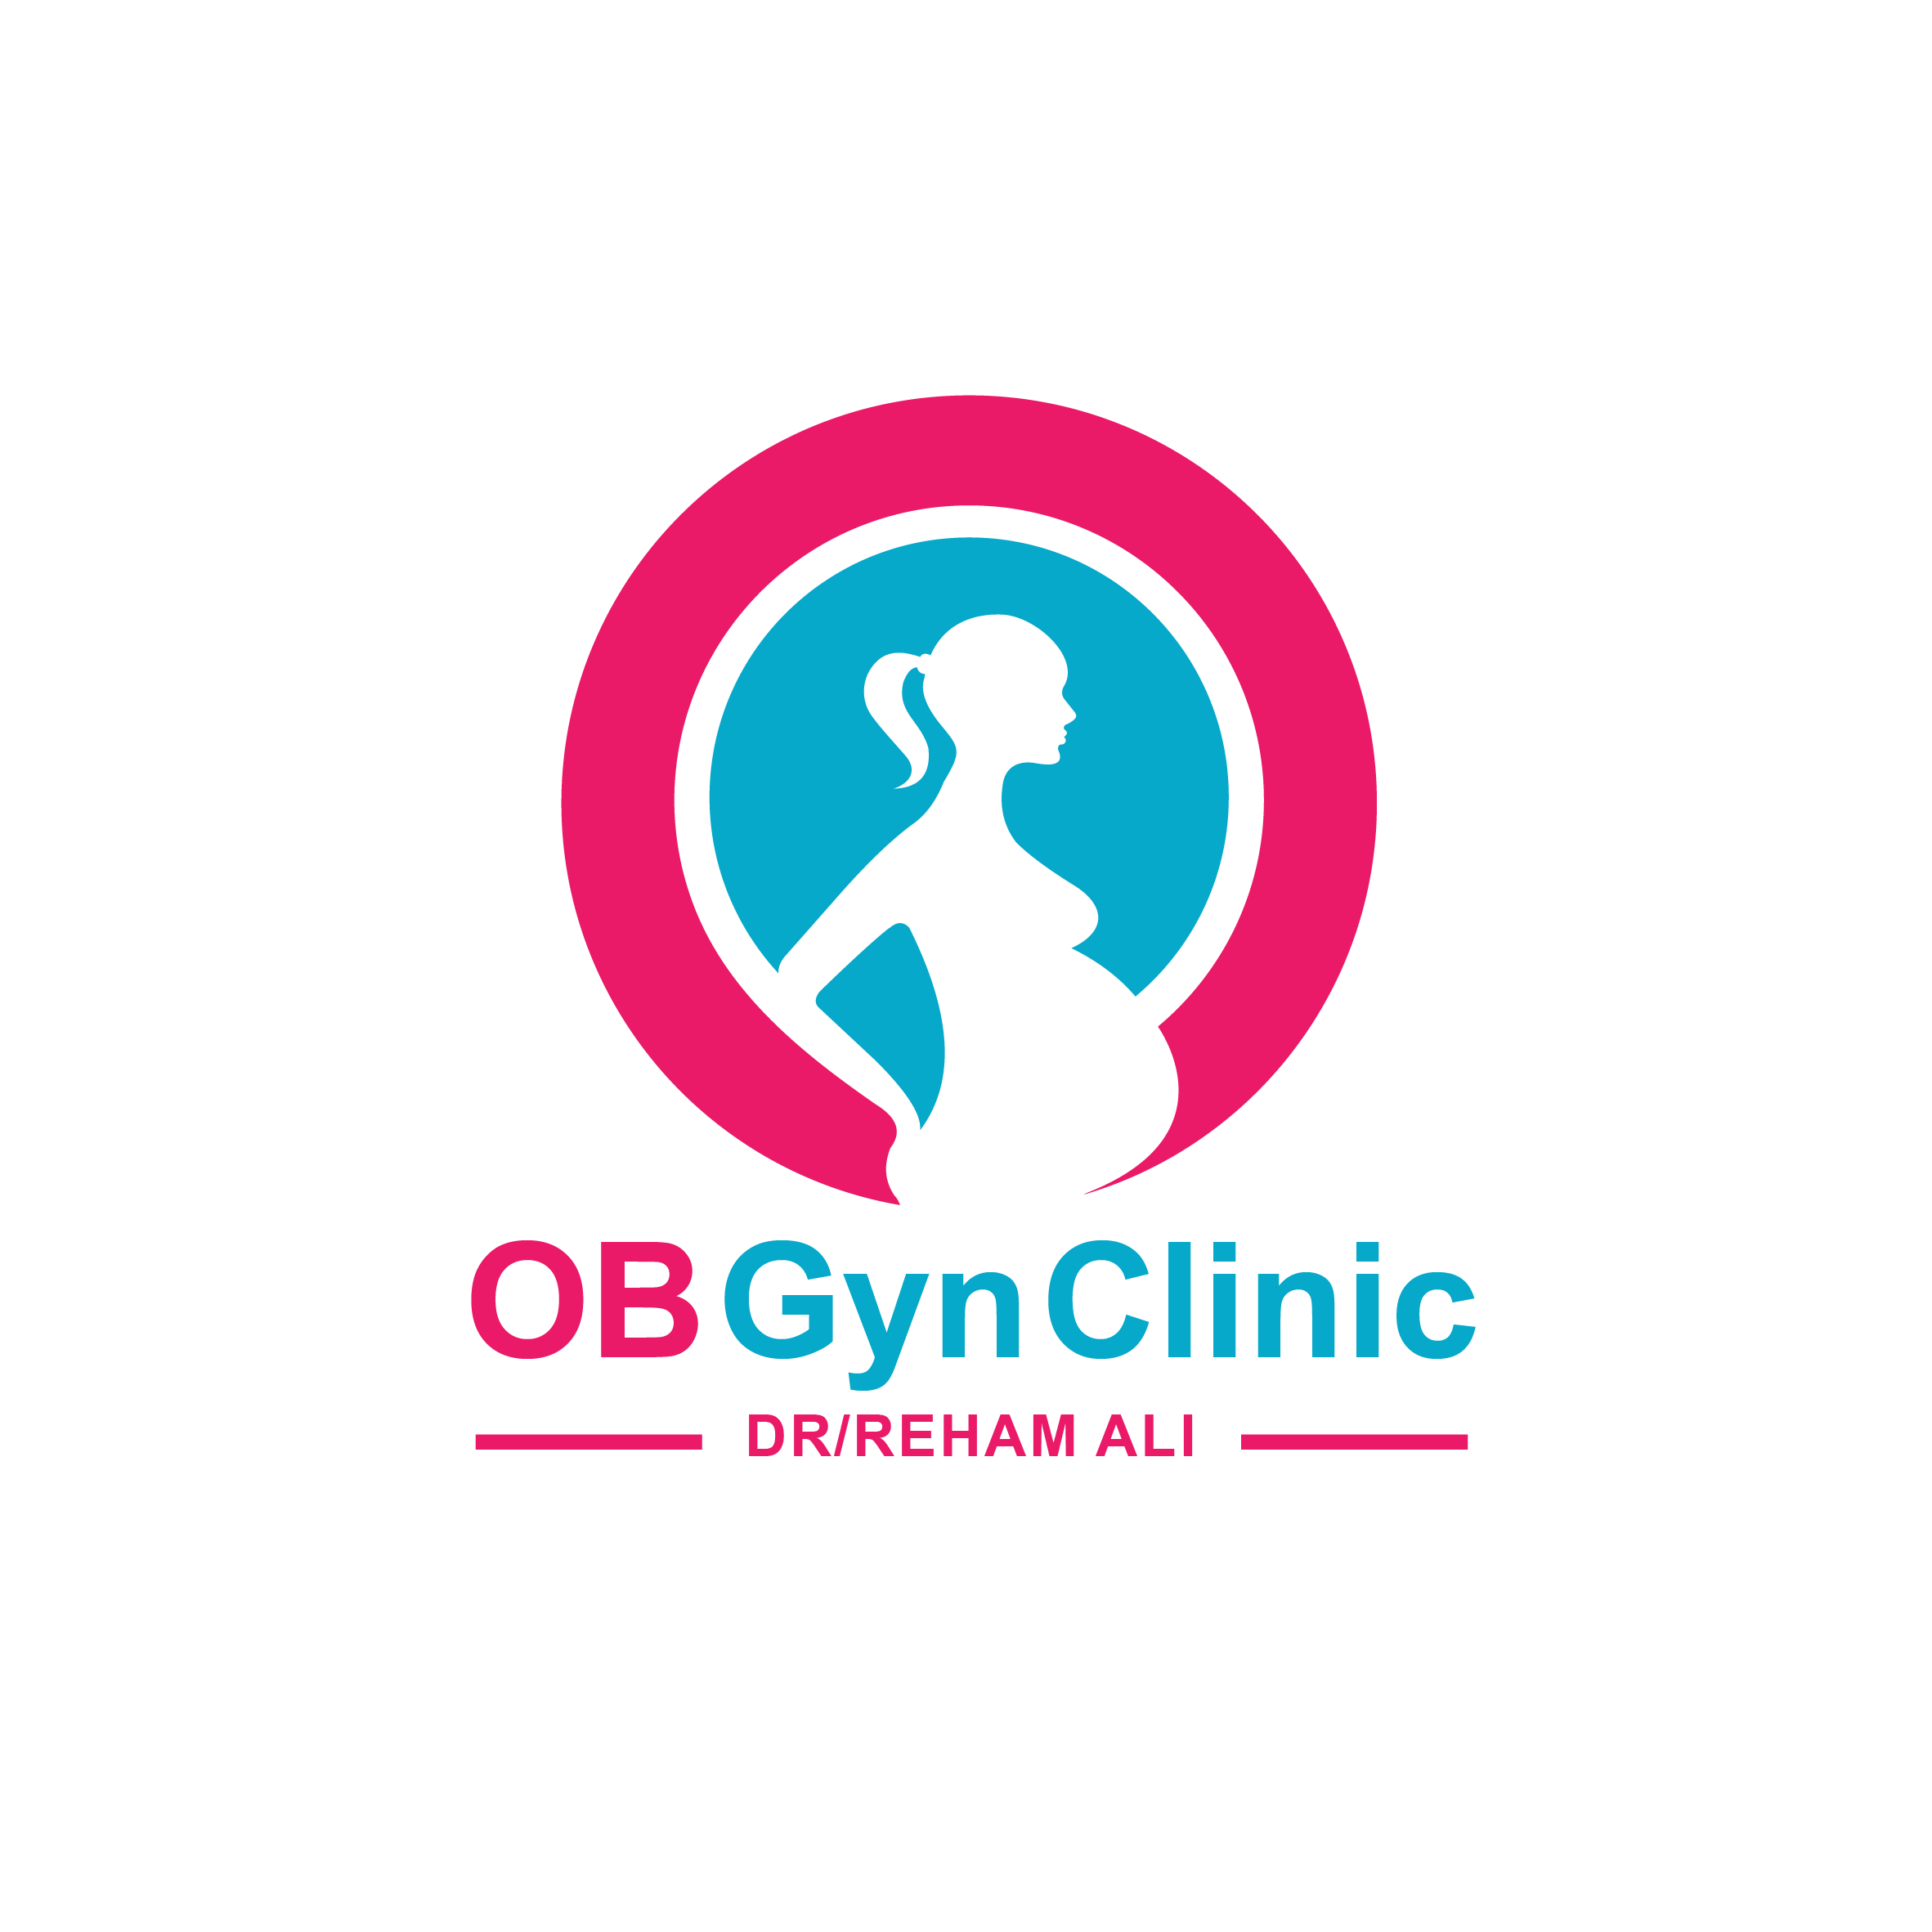 OB Gyn clinic